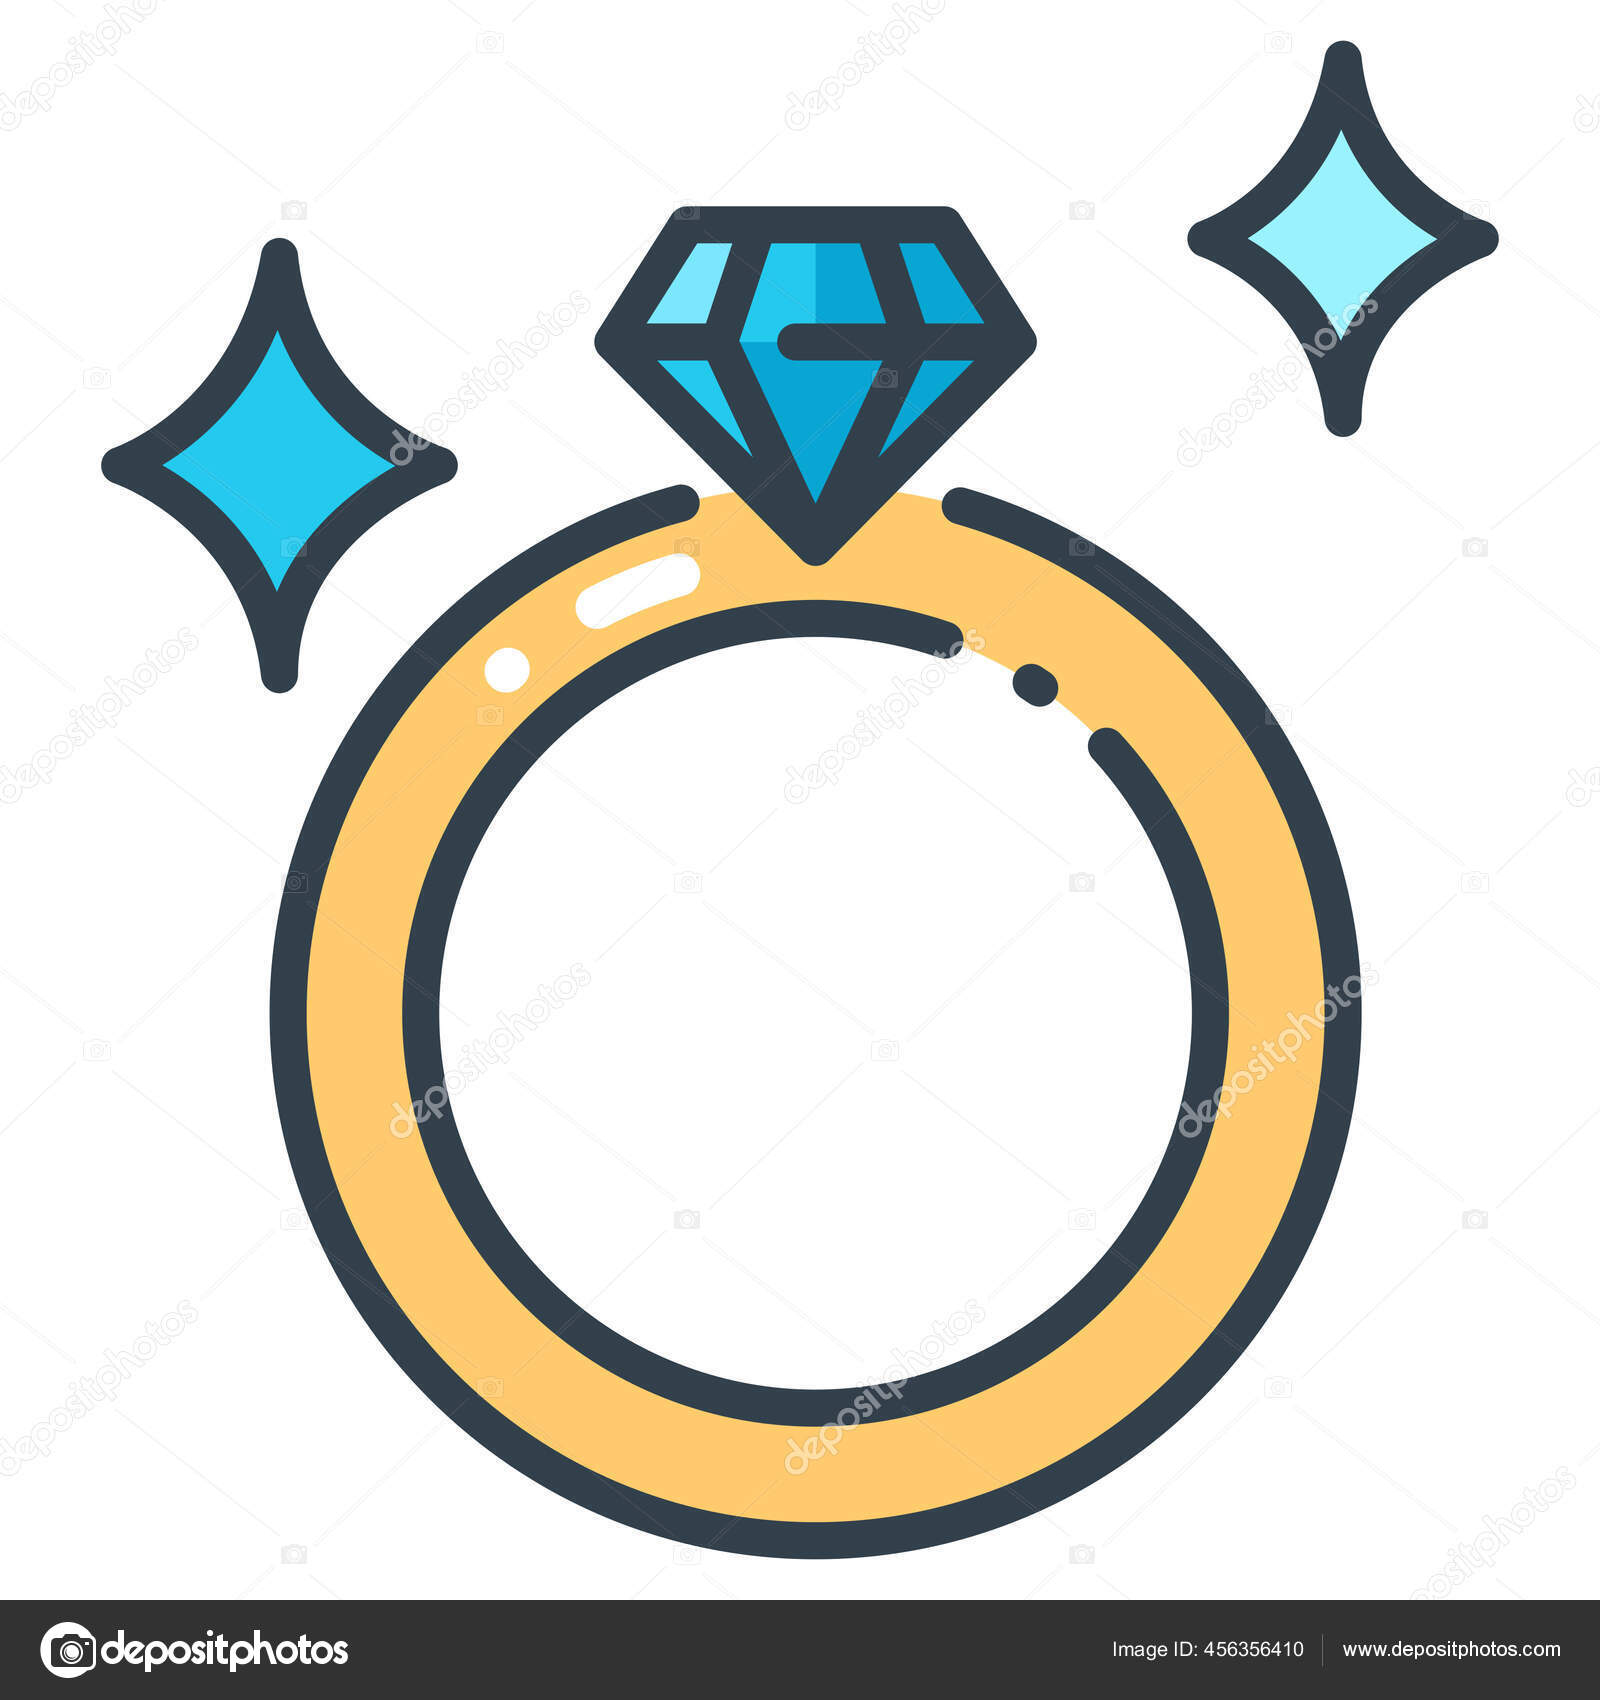 Cushion Outline French Cut Halo Engagement Ring - PureGemsJewels